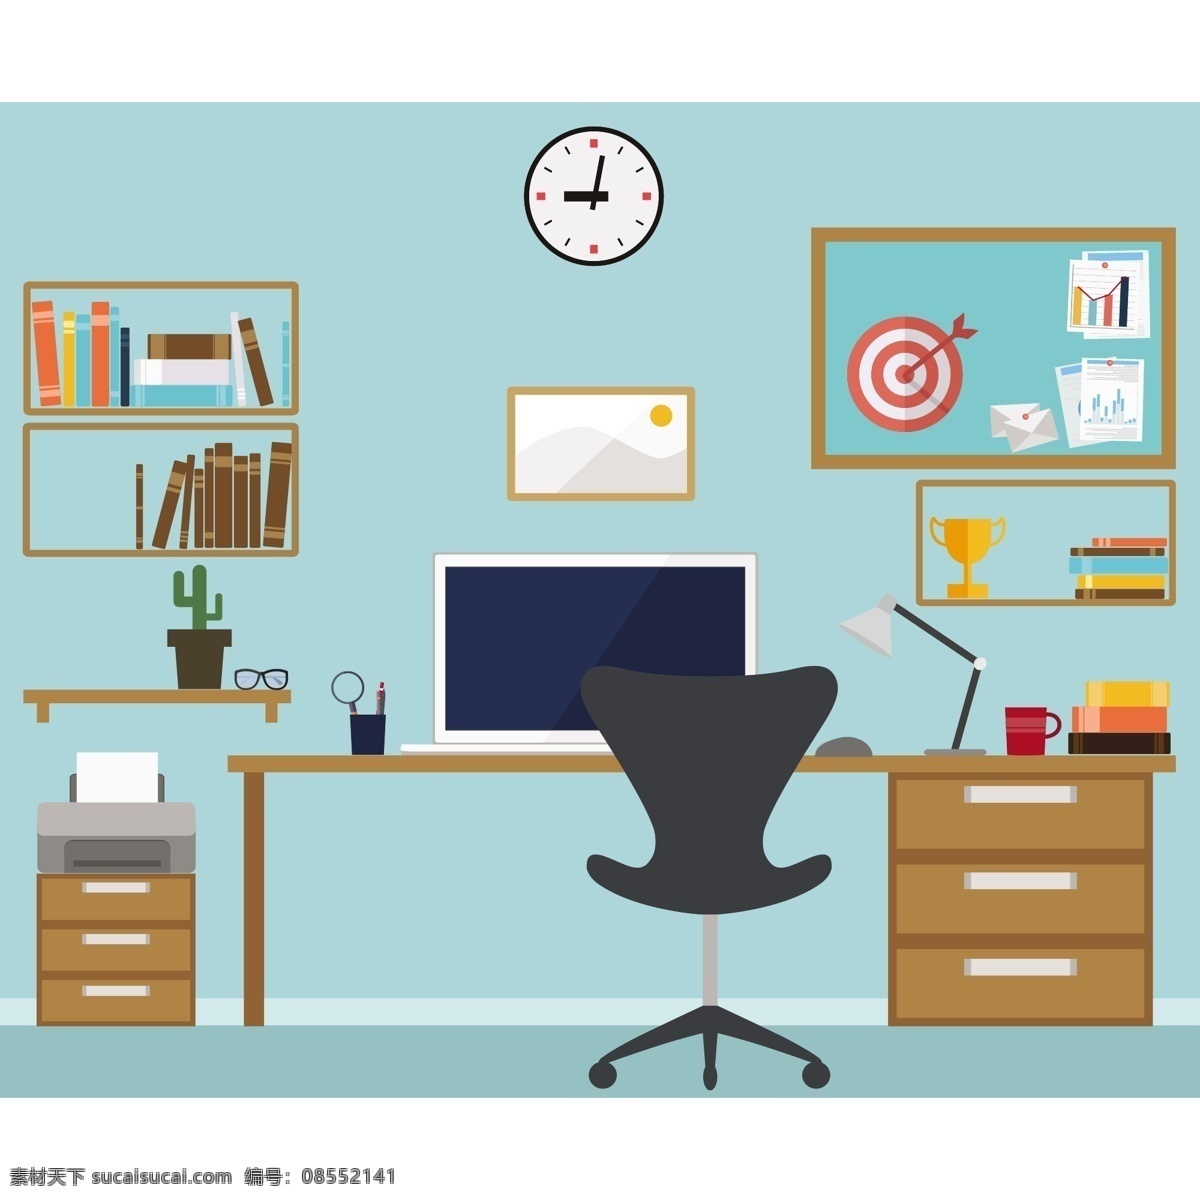 彩色 办公 空间设计 背景 书籍 电脑 时钟 墙纸 颜色 房间 书桌 彩色背景 椅子 打印机 工作区 多彩的背景 彩色的